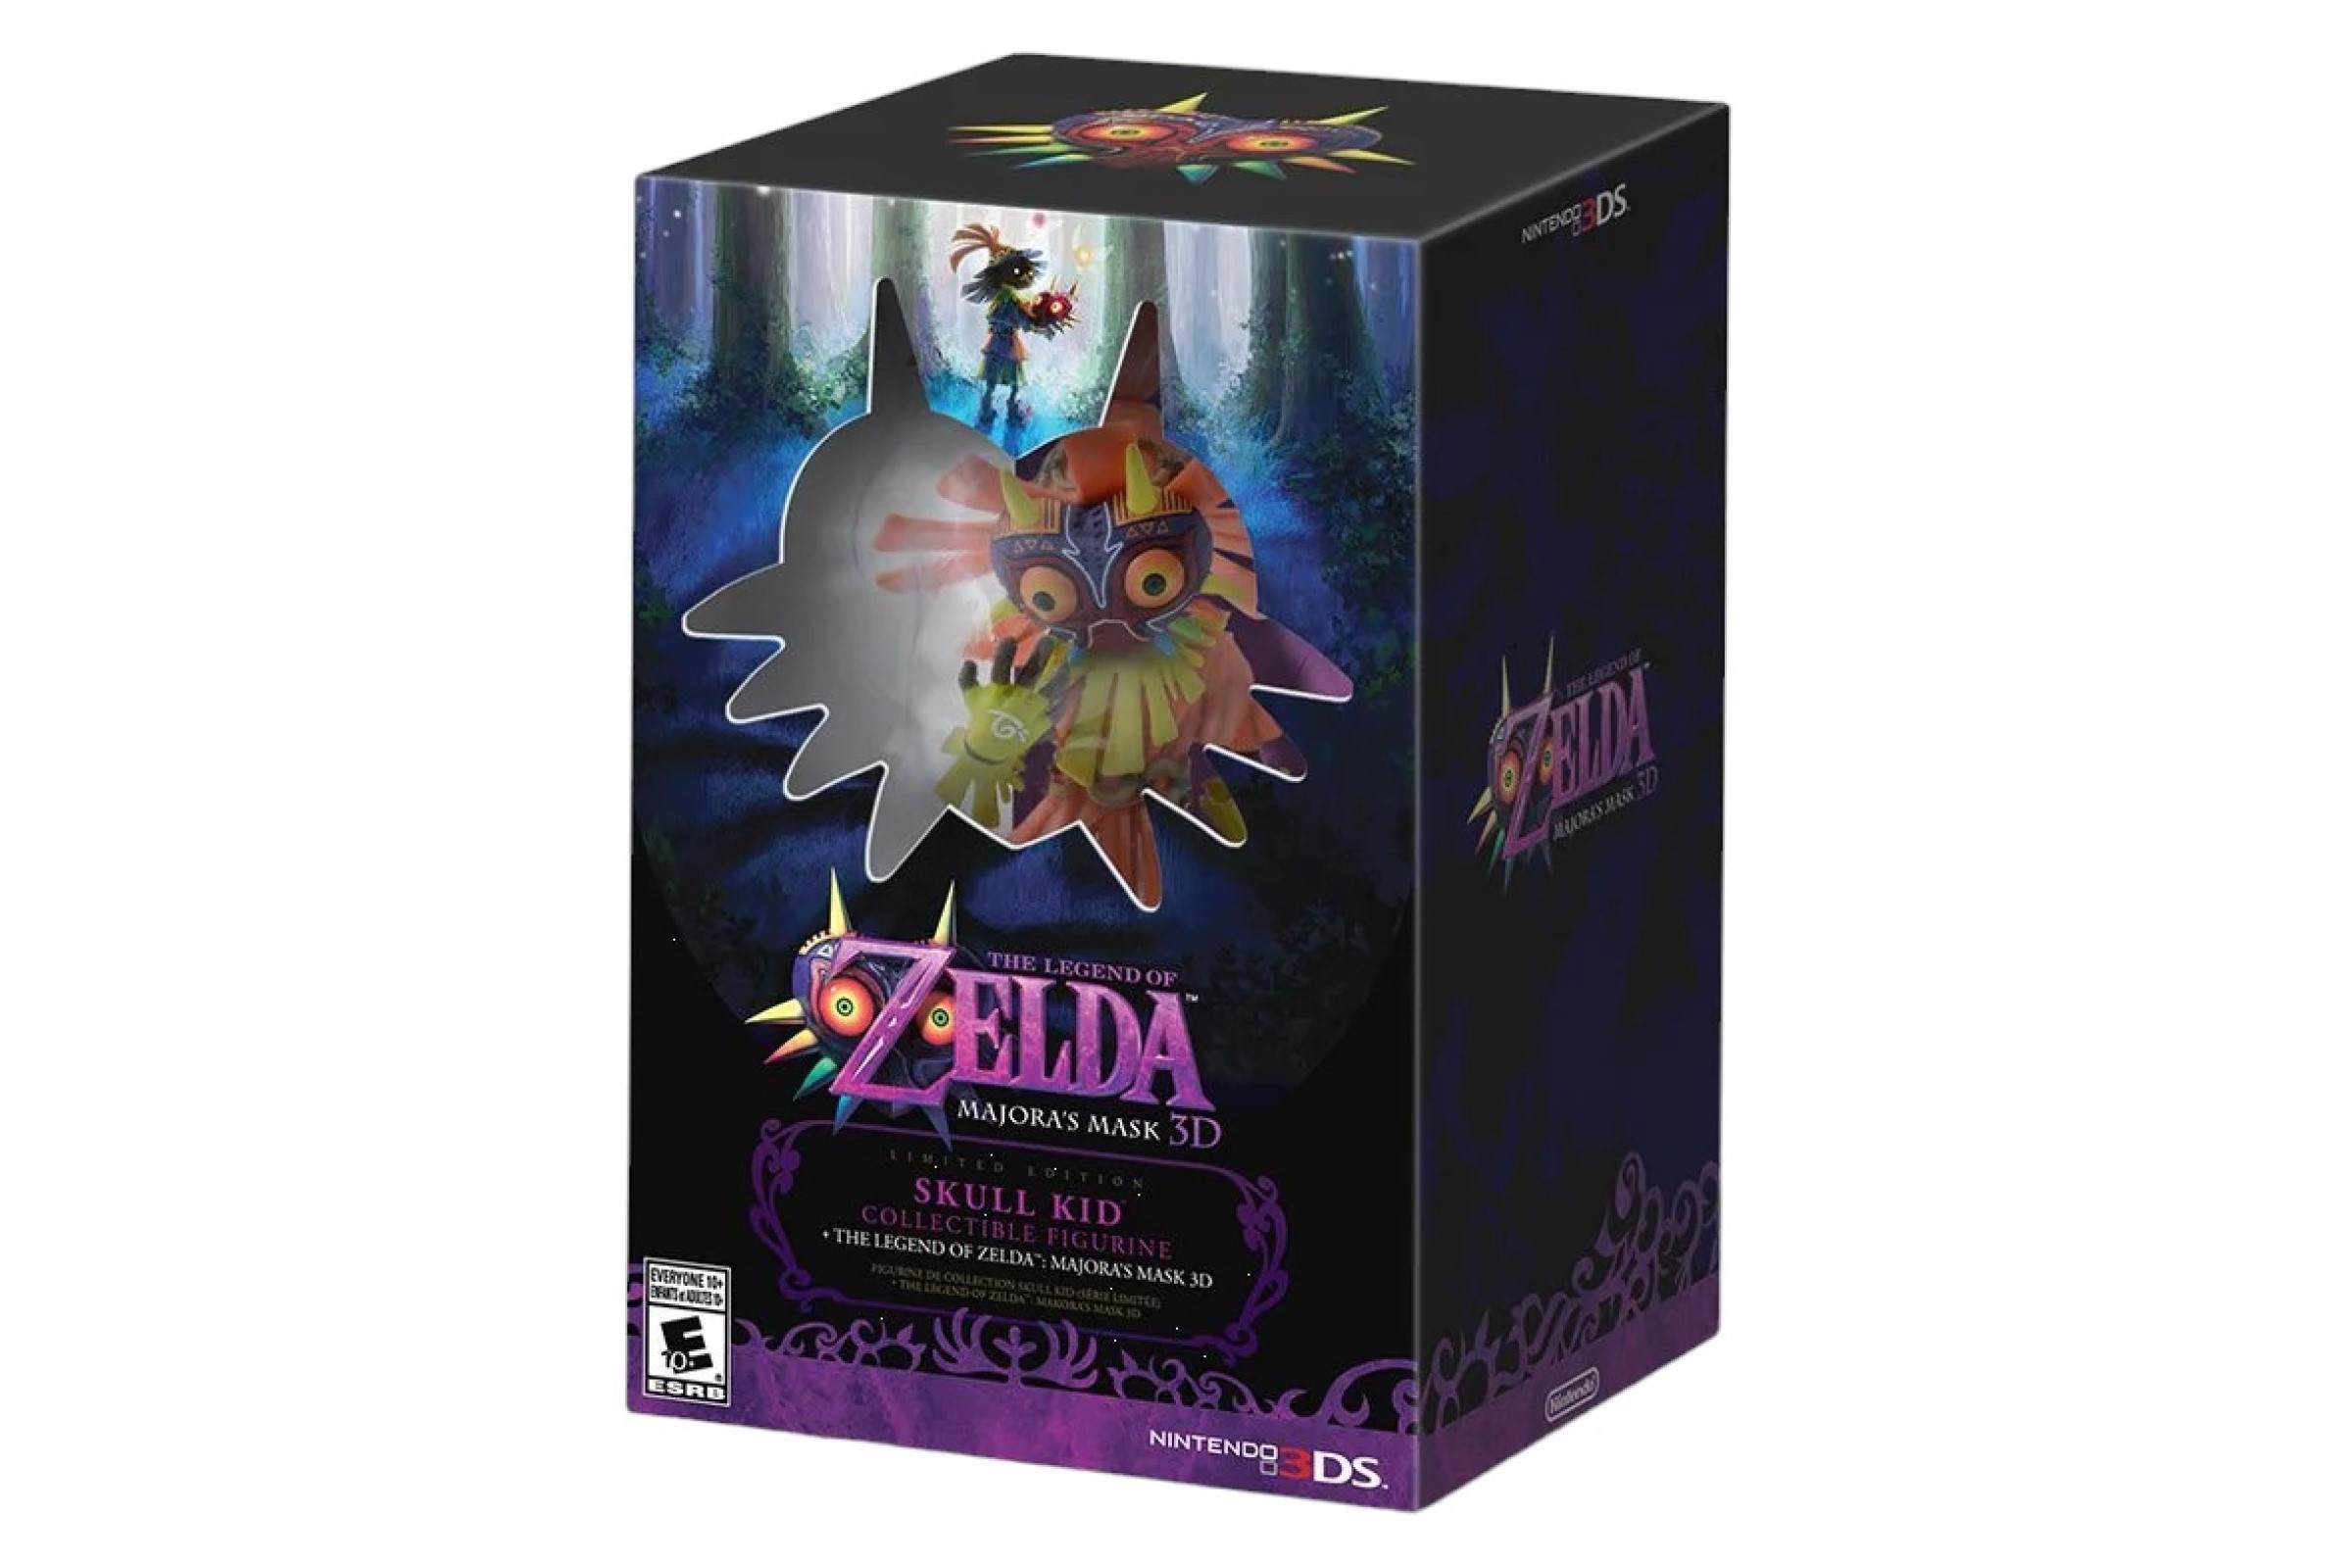 Link The Legend of Zelda Breath of the Wild First 4 Figures - Prime  Colecionismo - Colecionando clientes, e acima de tudo bons amigos.